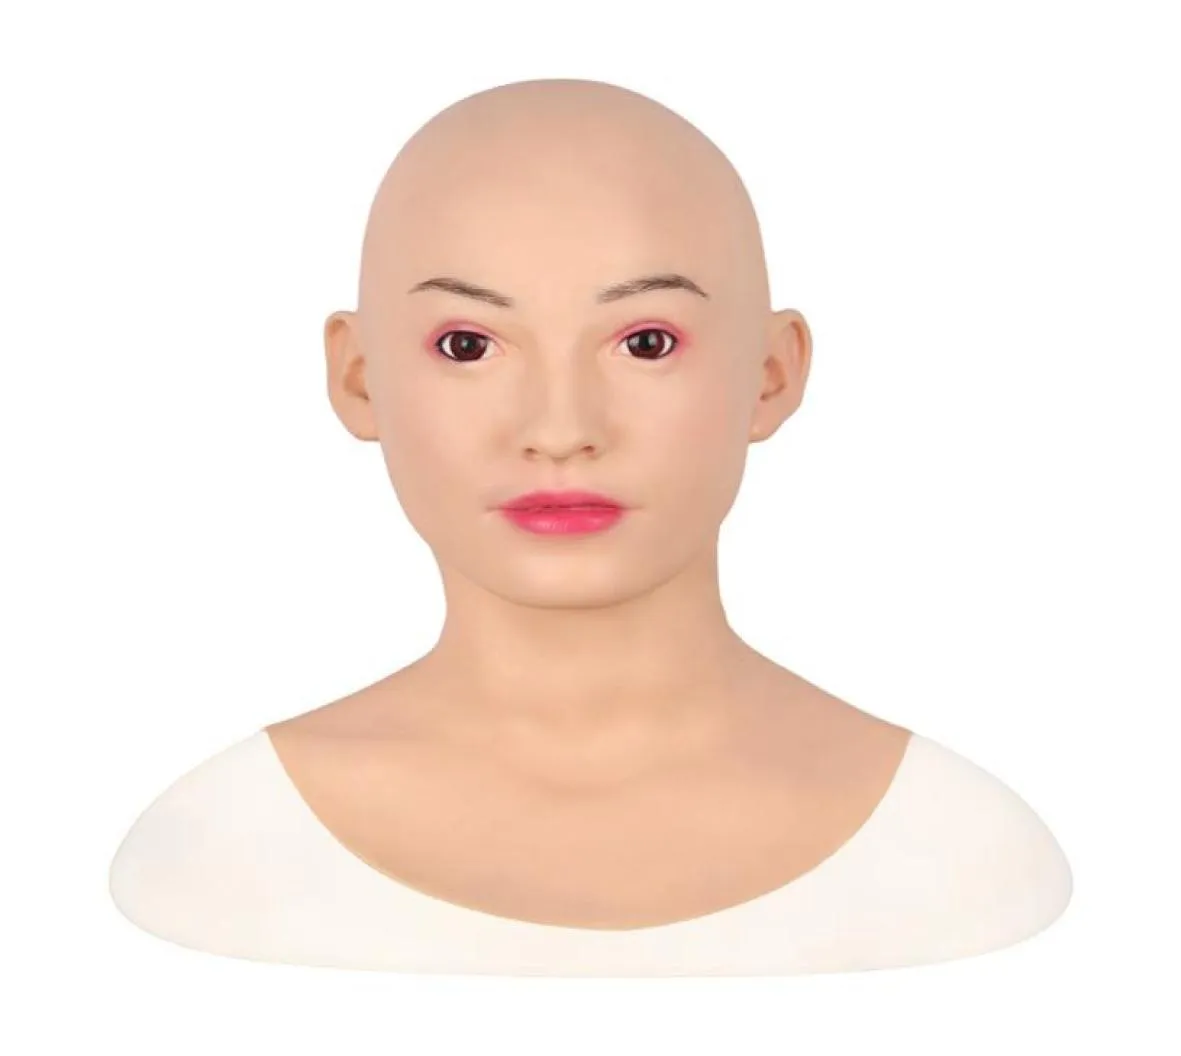 Künstliche menschliche Haut Gesicht realistisch Silikon Brustformen Crossdresser Transgender Entstellung Reparatur Silikon Halloween Maske F8463491